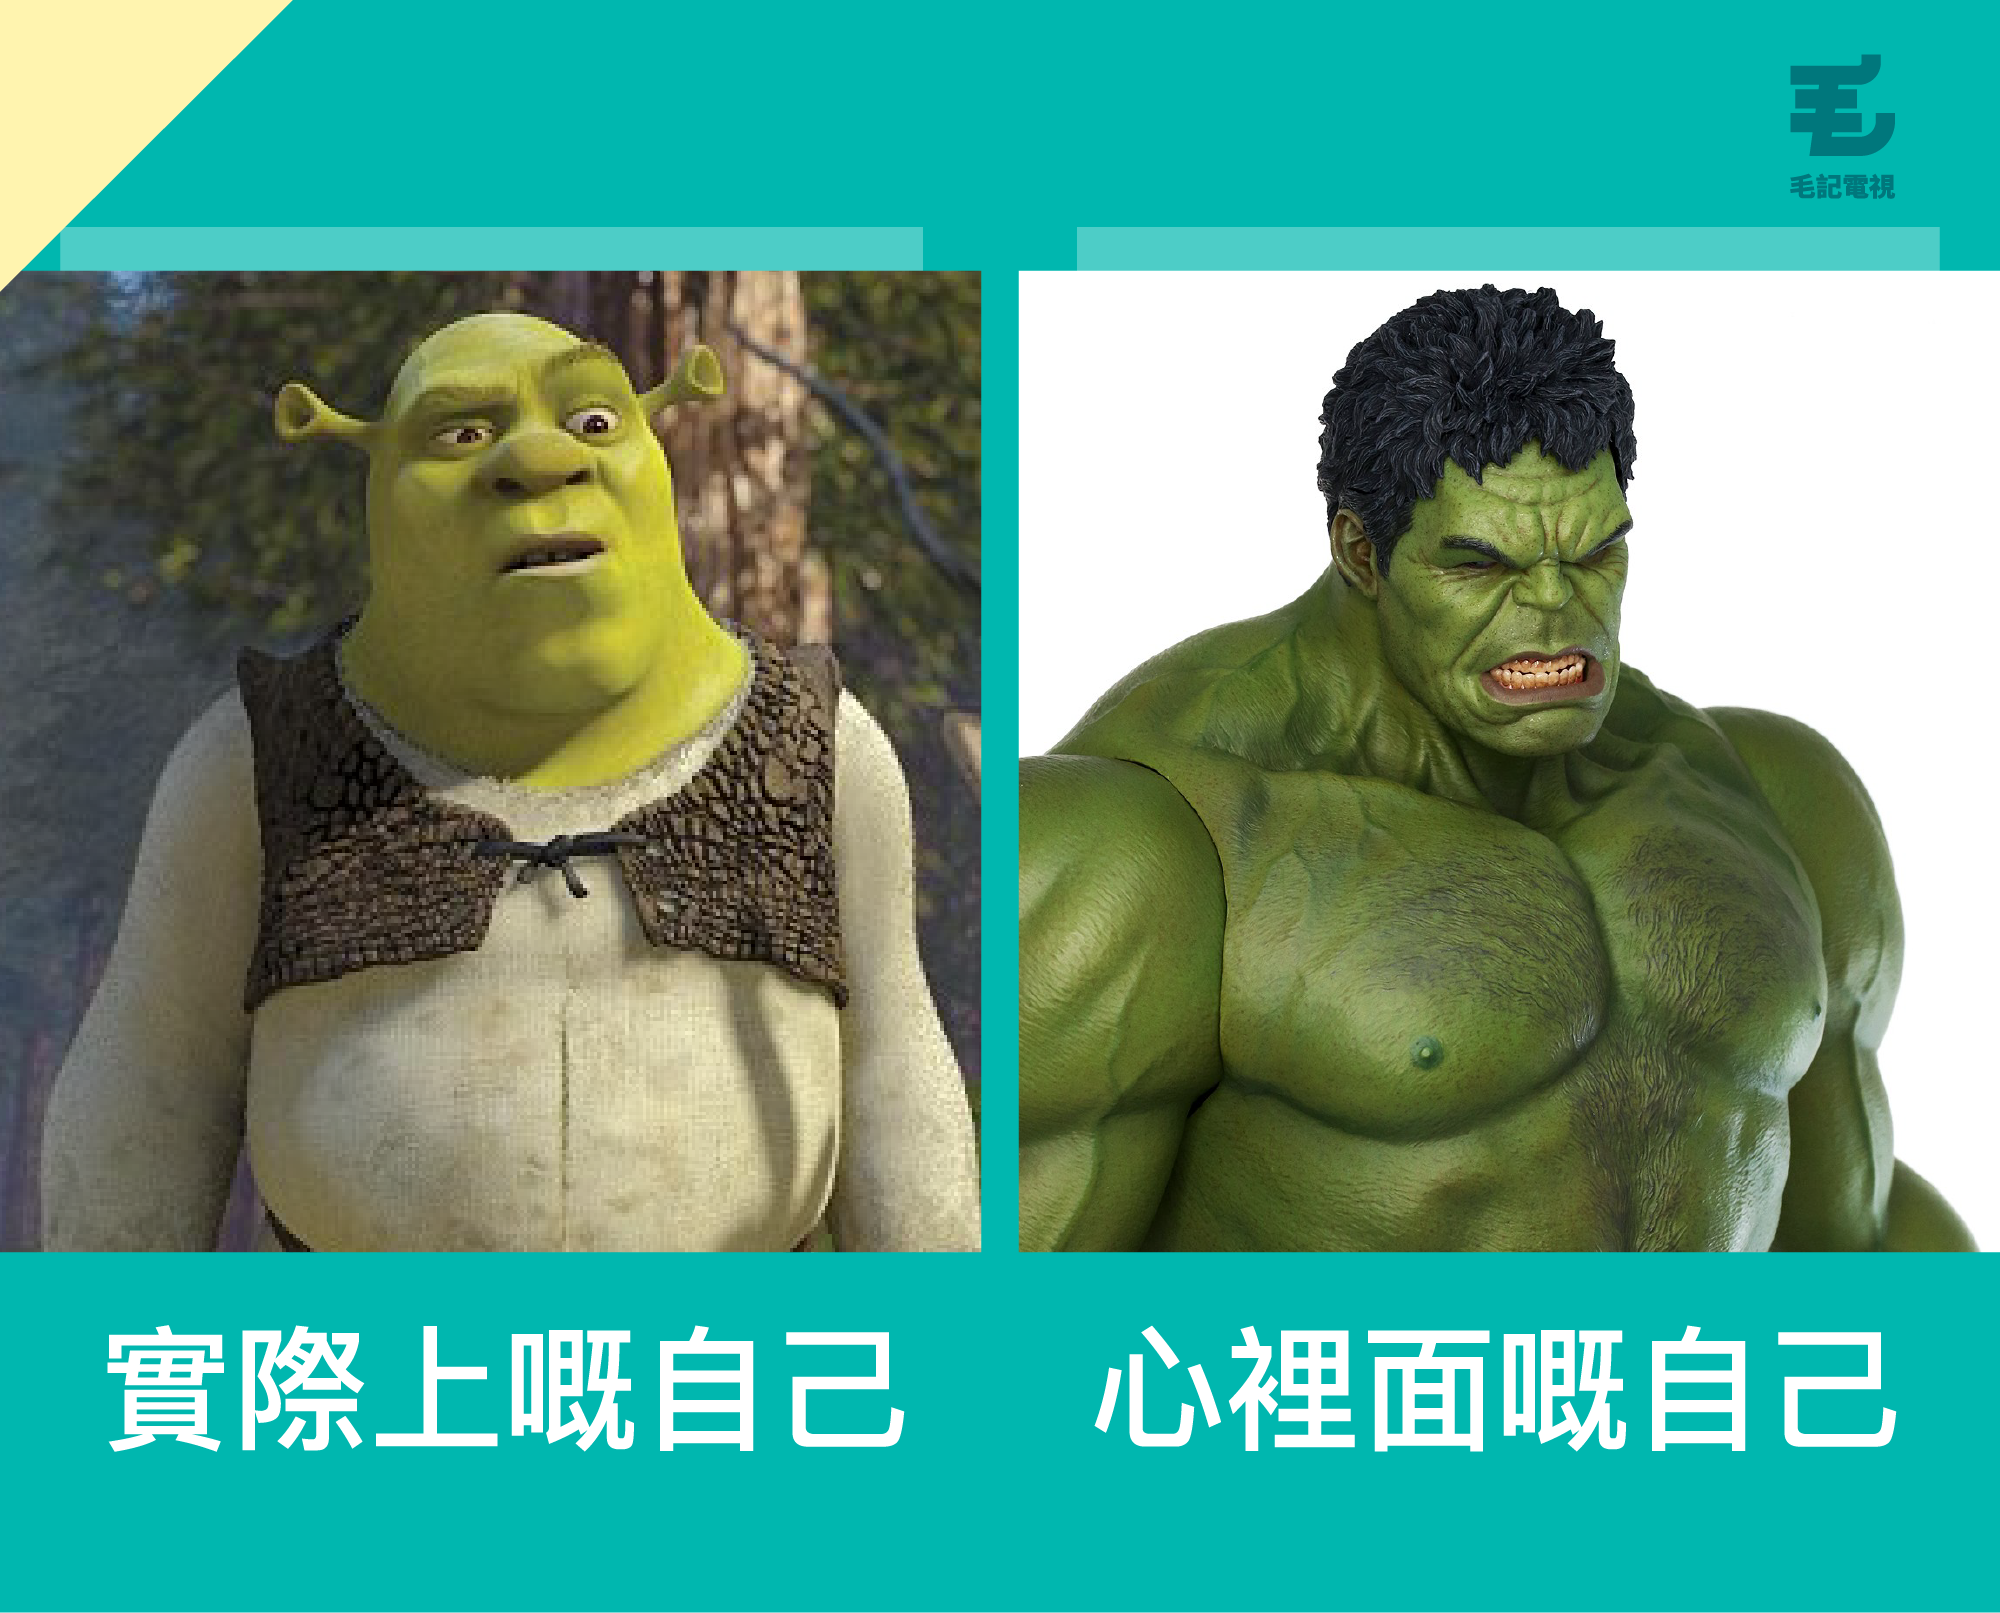 原圖來源：電影《Shrek》截圖、marveltoynews